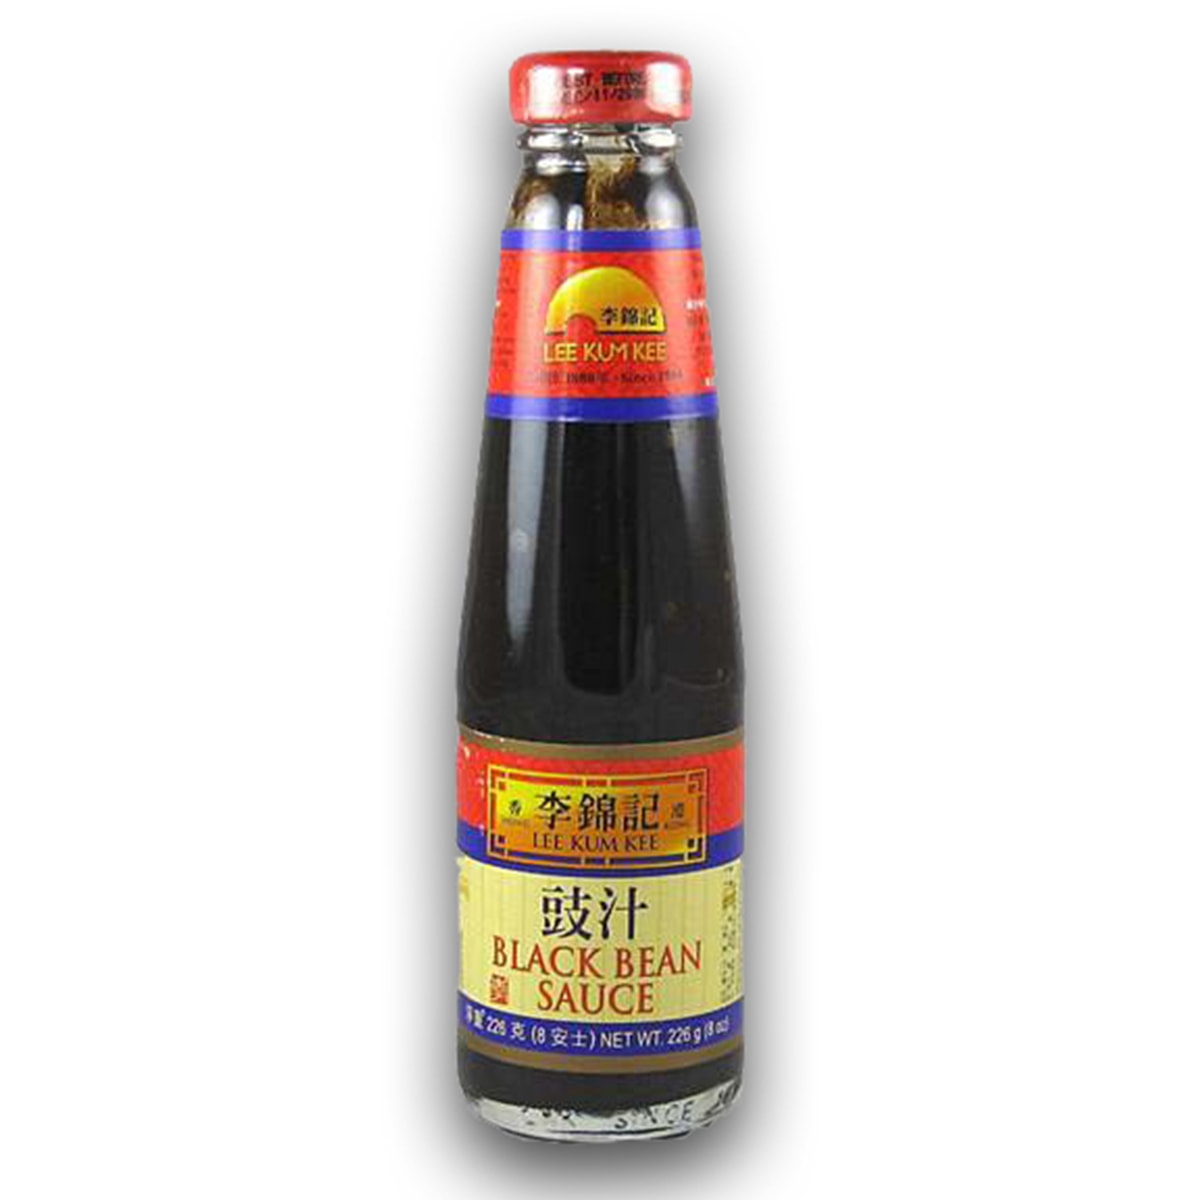 Buy Lee Kum Kee Black Bean Sauce - 226 gm